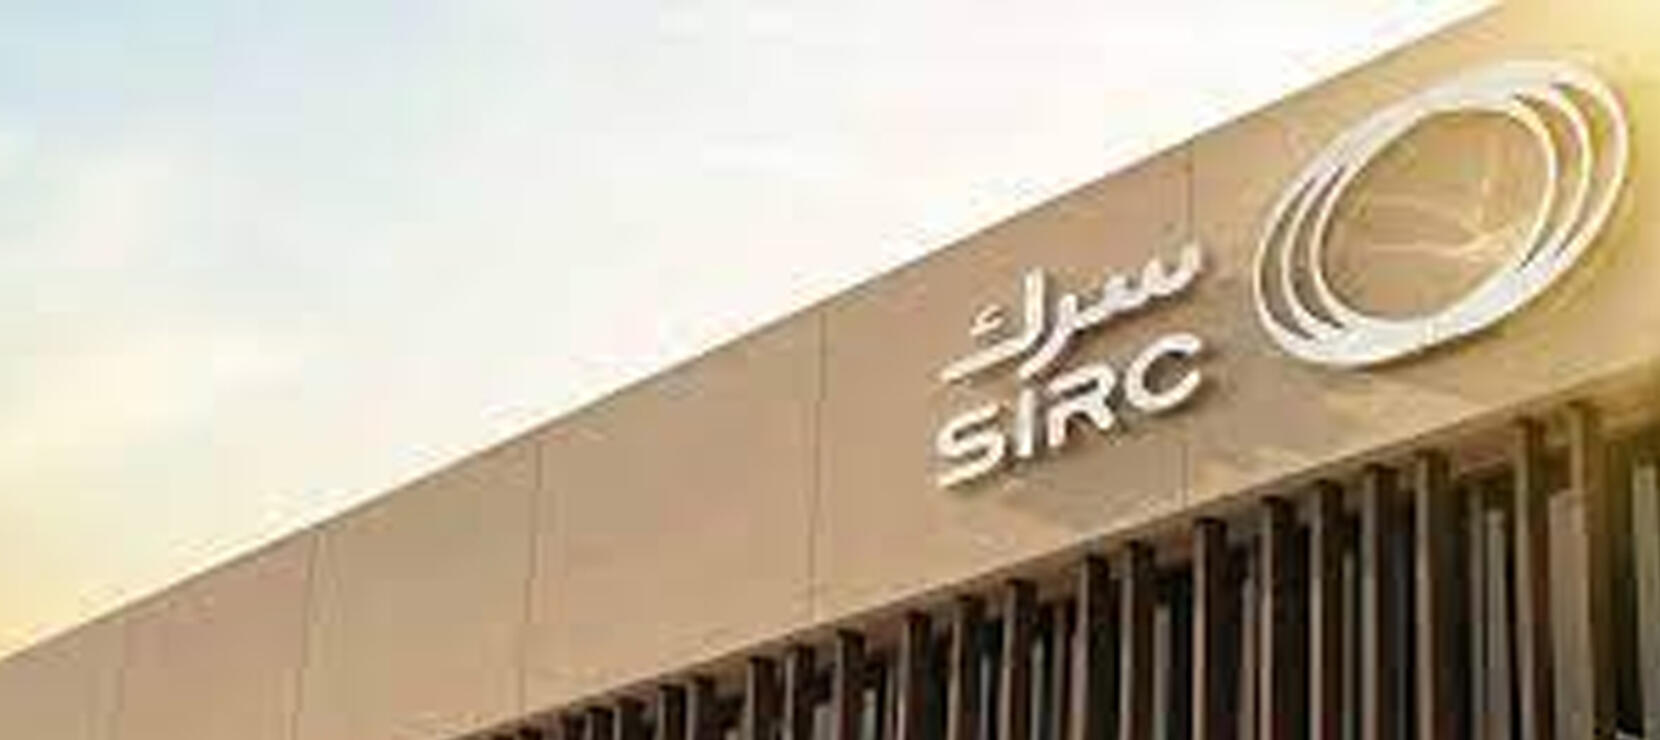 Nueva Adjudicación: SIRC, Arabia Saudí